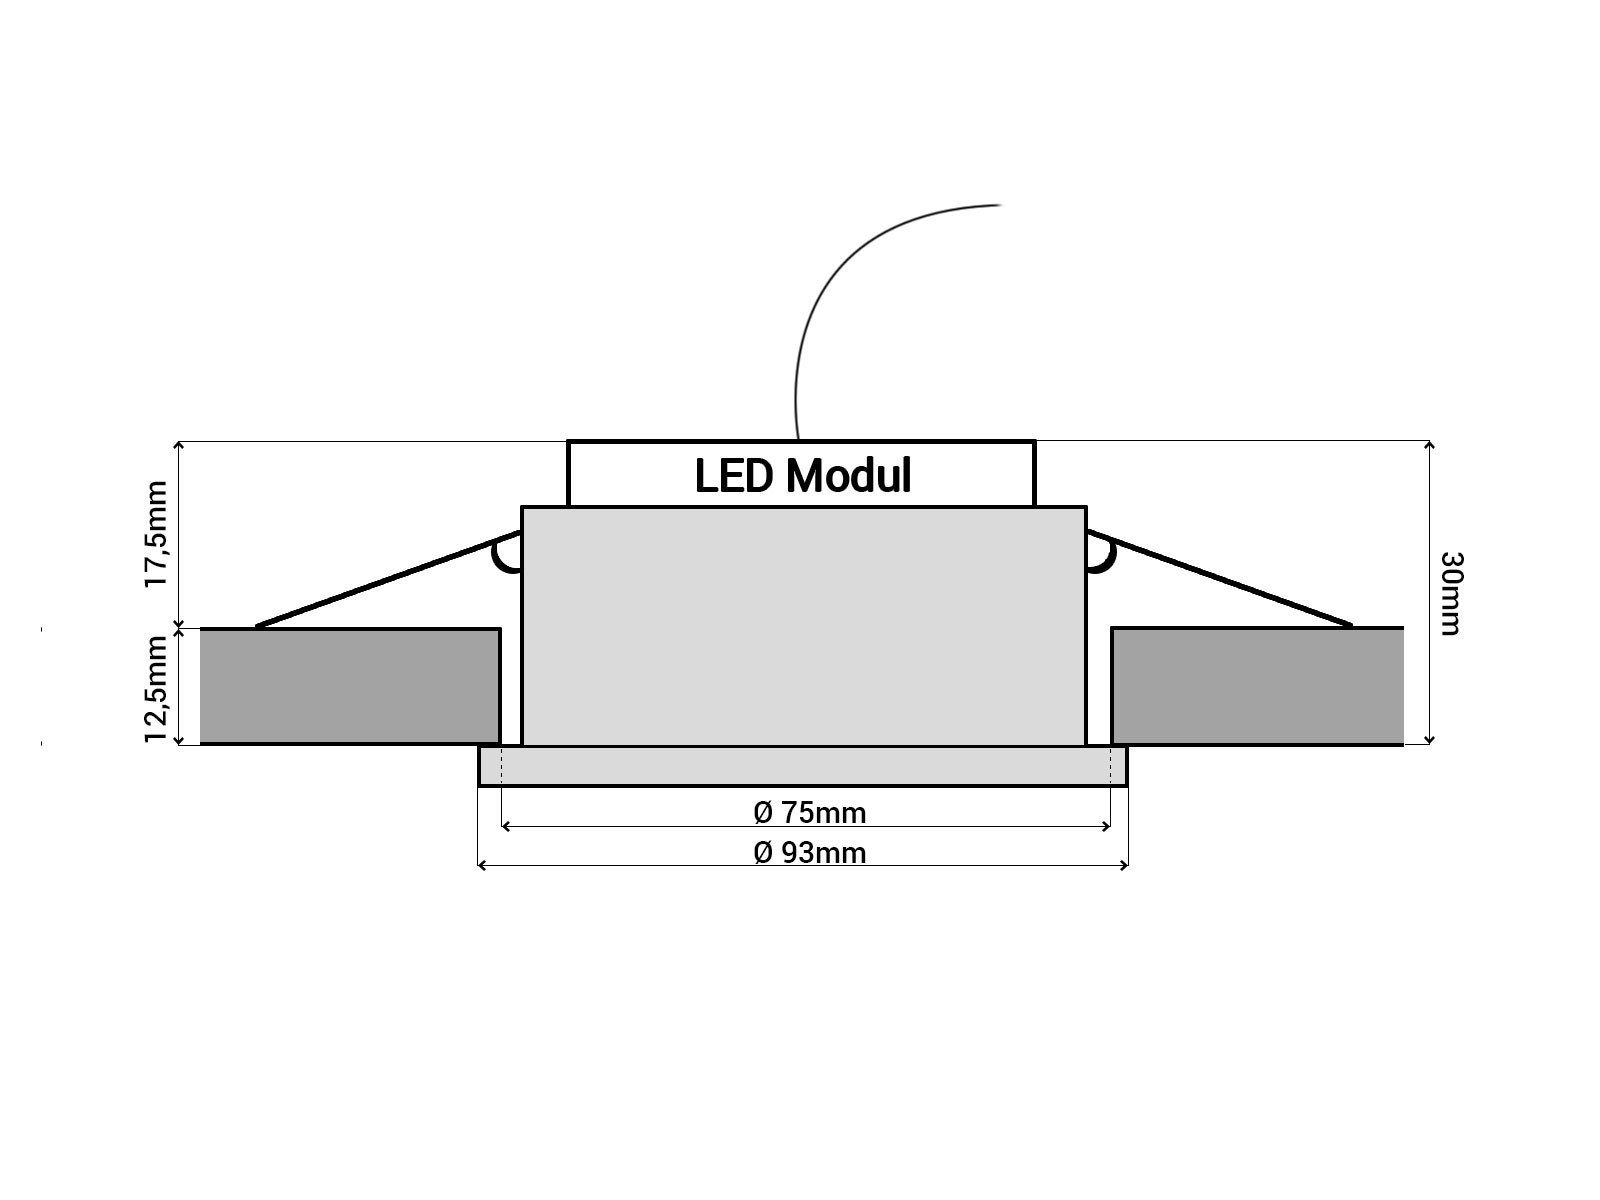 SSC-LUXon LED Warmweiß mit rund Alu Einbaustrahler LED-Modul, RF-2 schwarz LED-Einbauspot gebuerstet flach